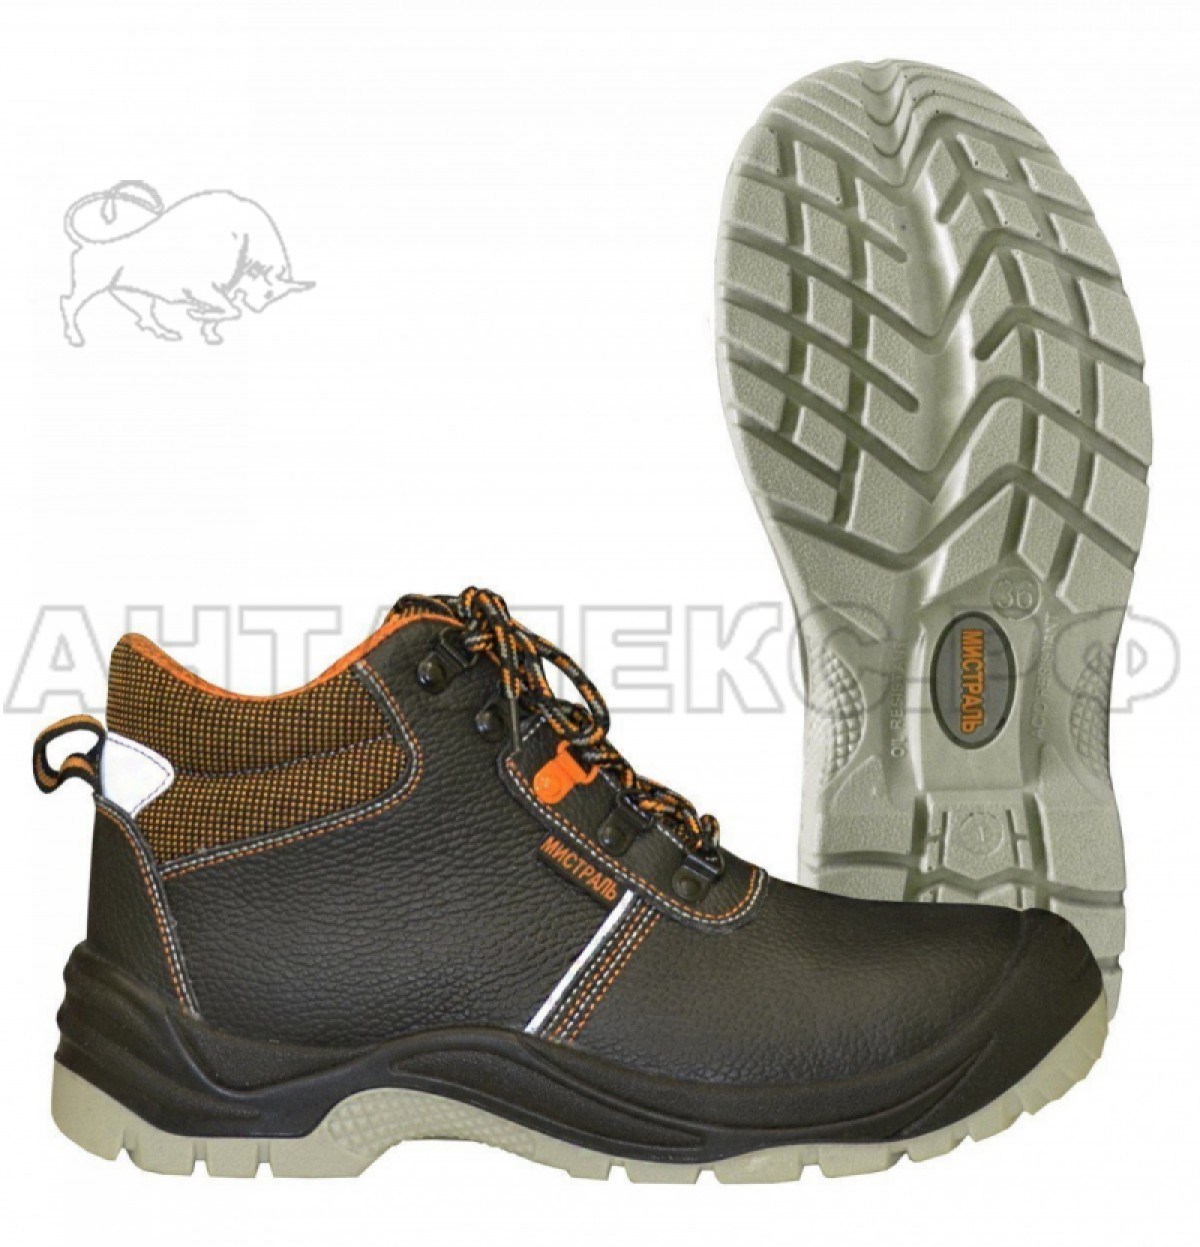 Купить кожаные ботинки Мистраль ULTRA SJ6055 оптом и в розницу по низкойцене